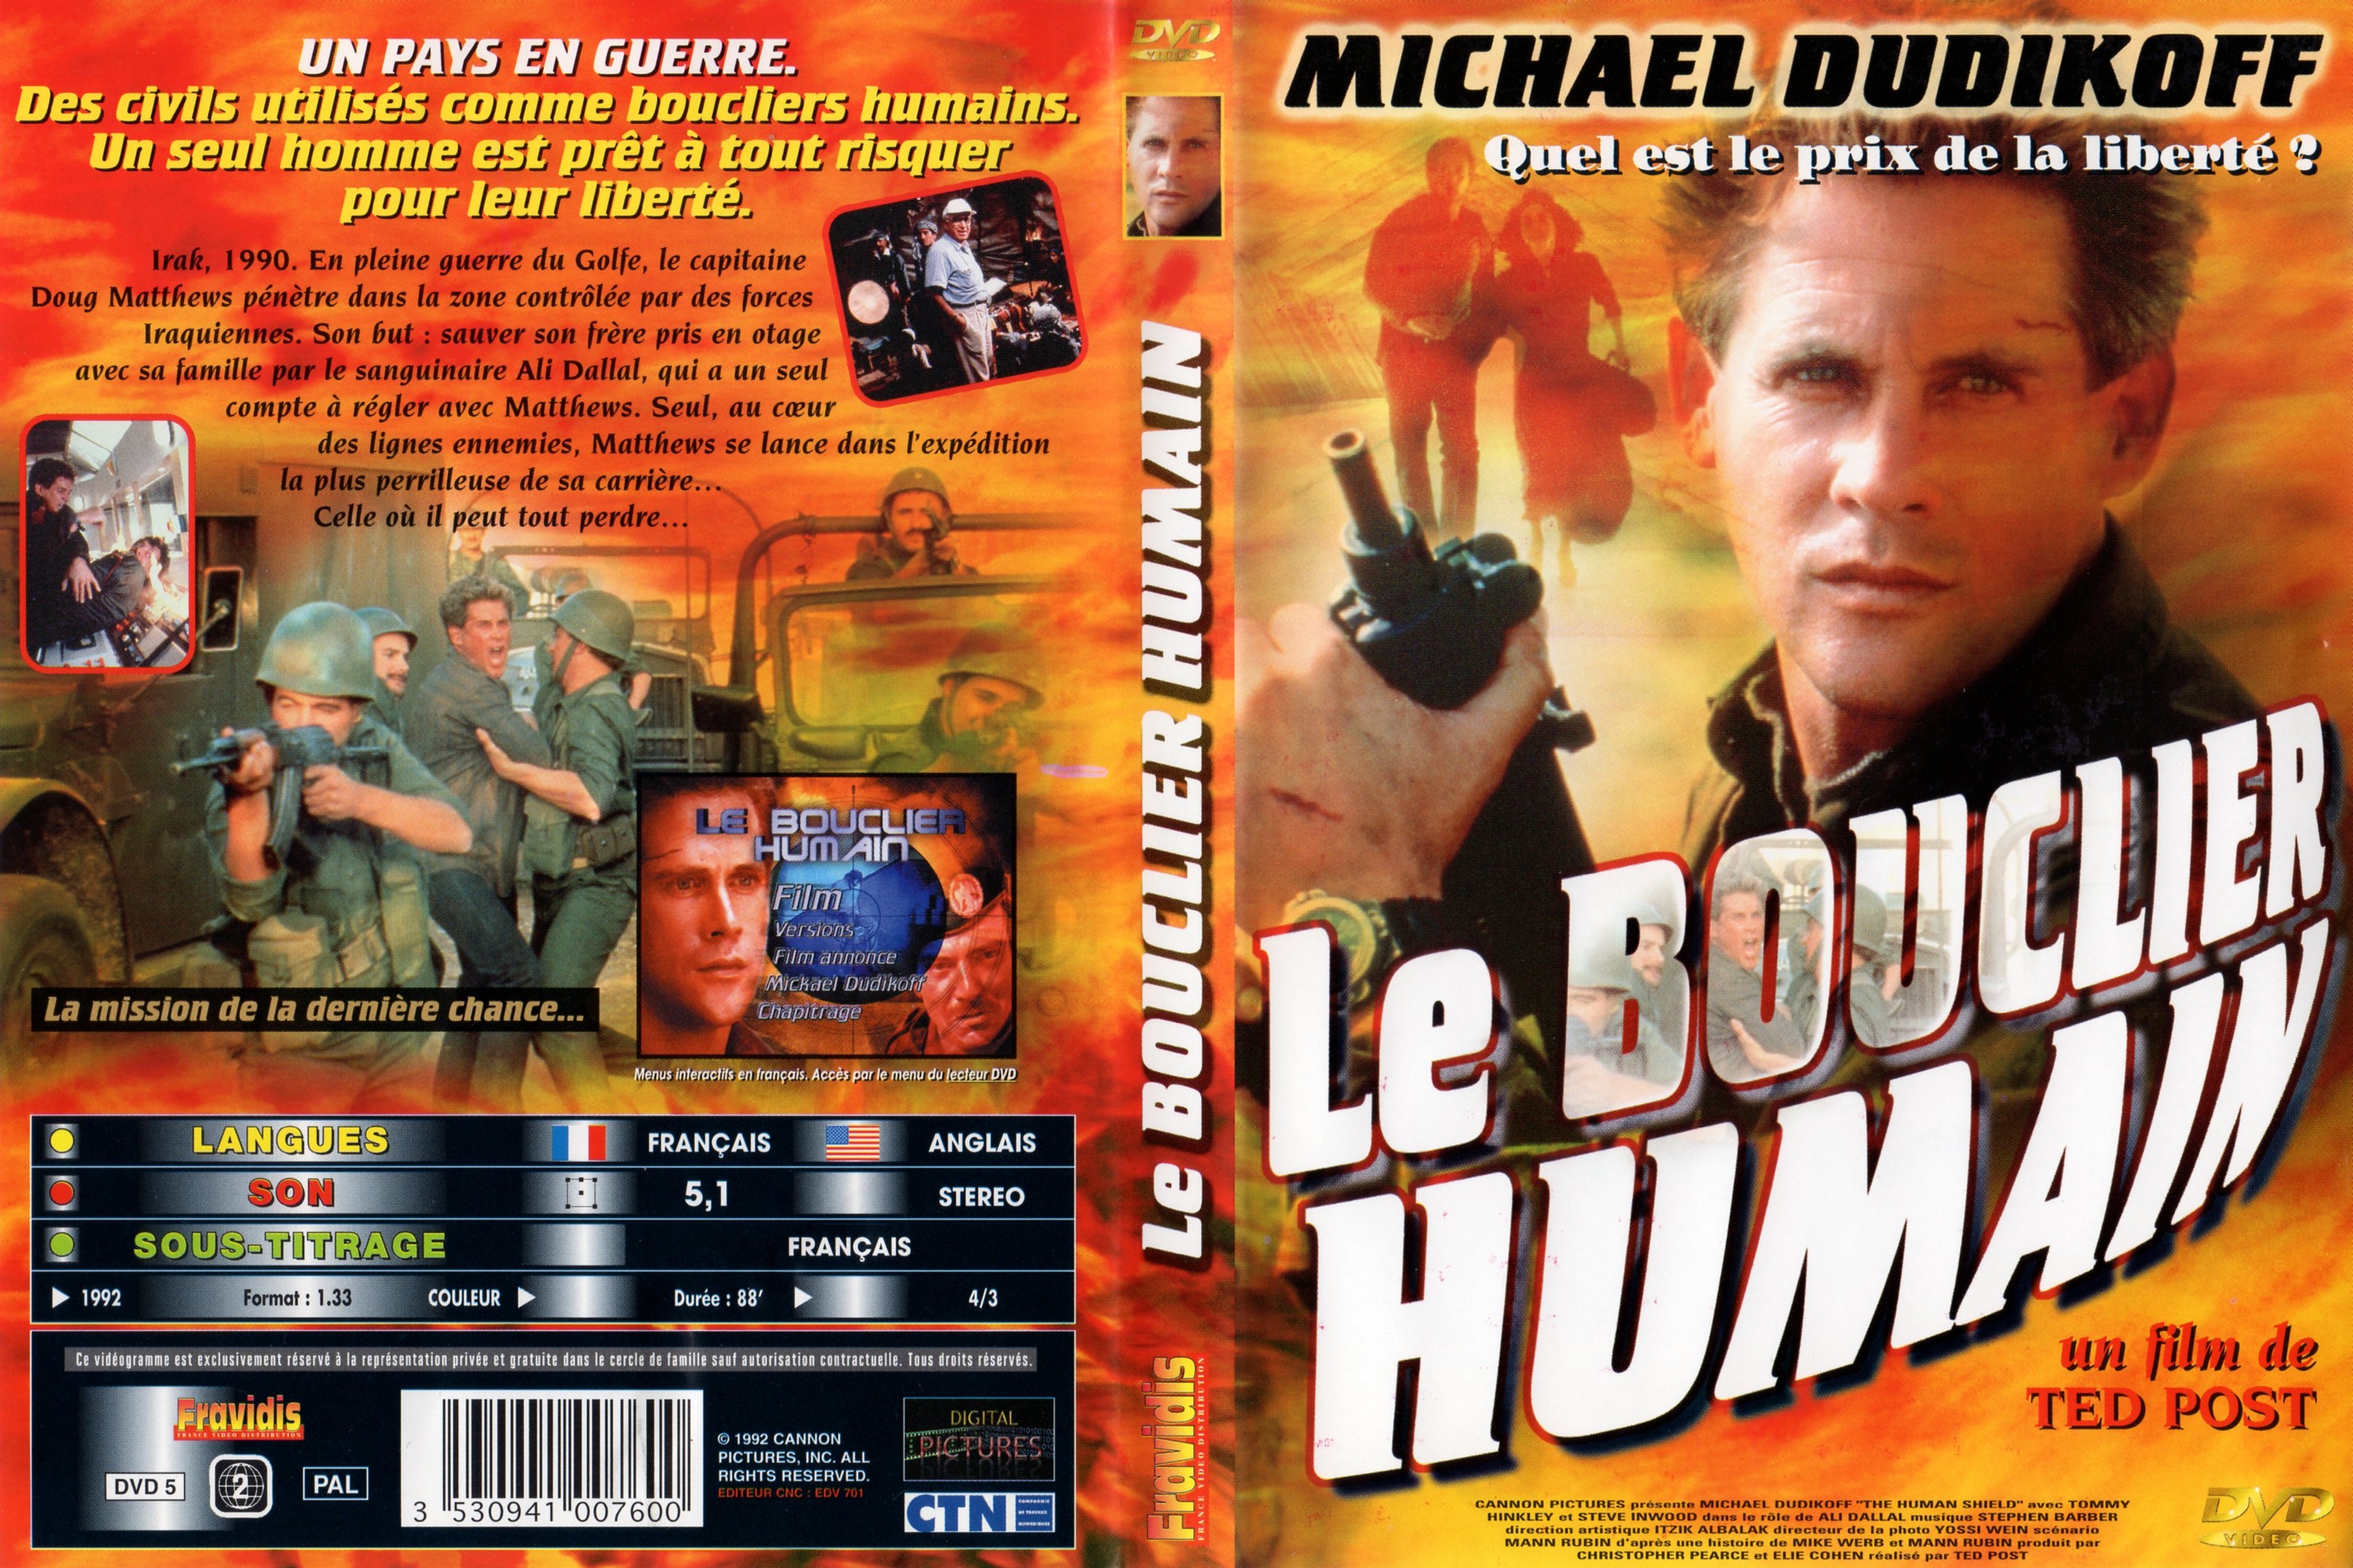 Jaquette DVD Le bouclier humain v2